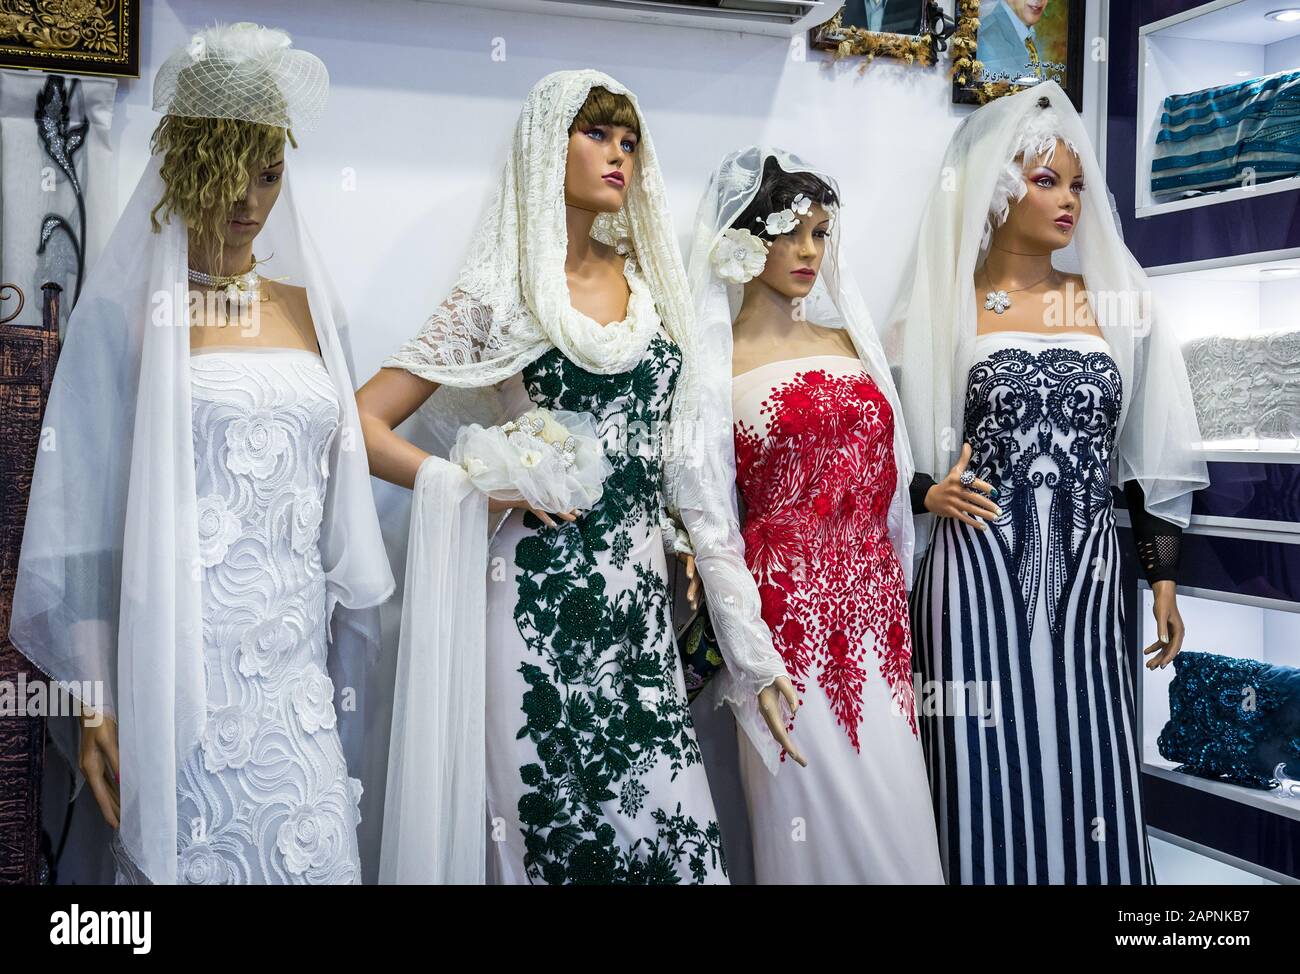 Salon de robe de mariage sur le vieux bazar de Kashan, ville capitale de comté de Kashan en Iran Banque D'Images